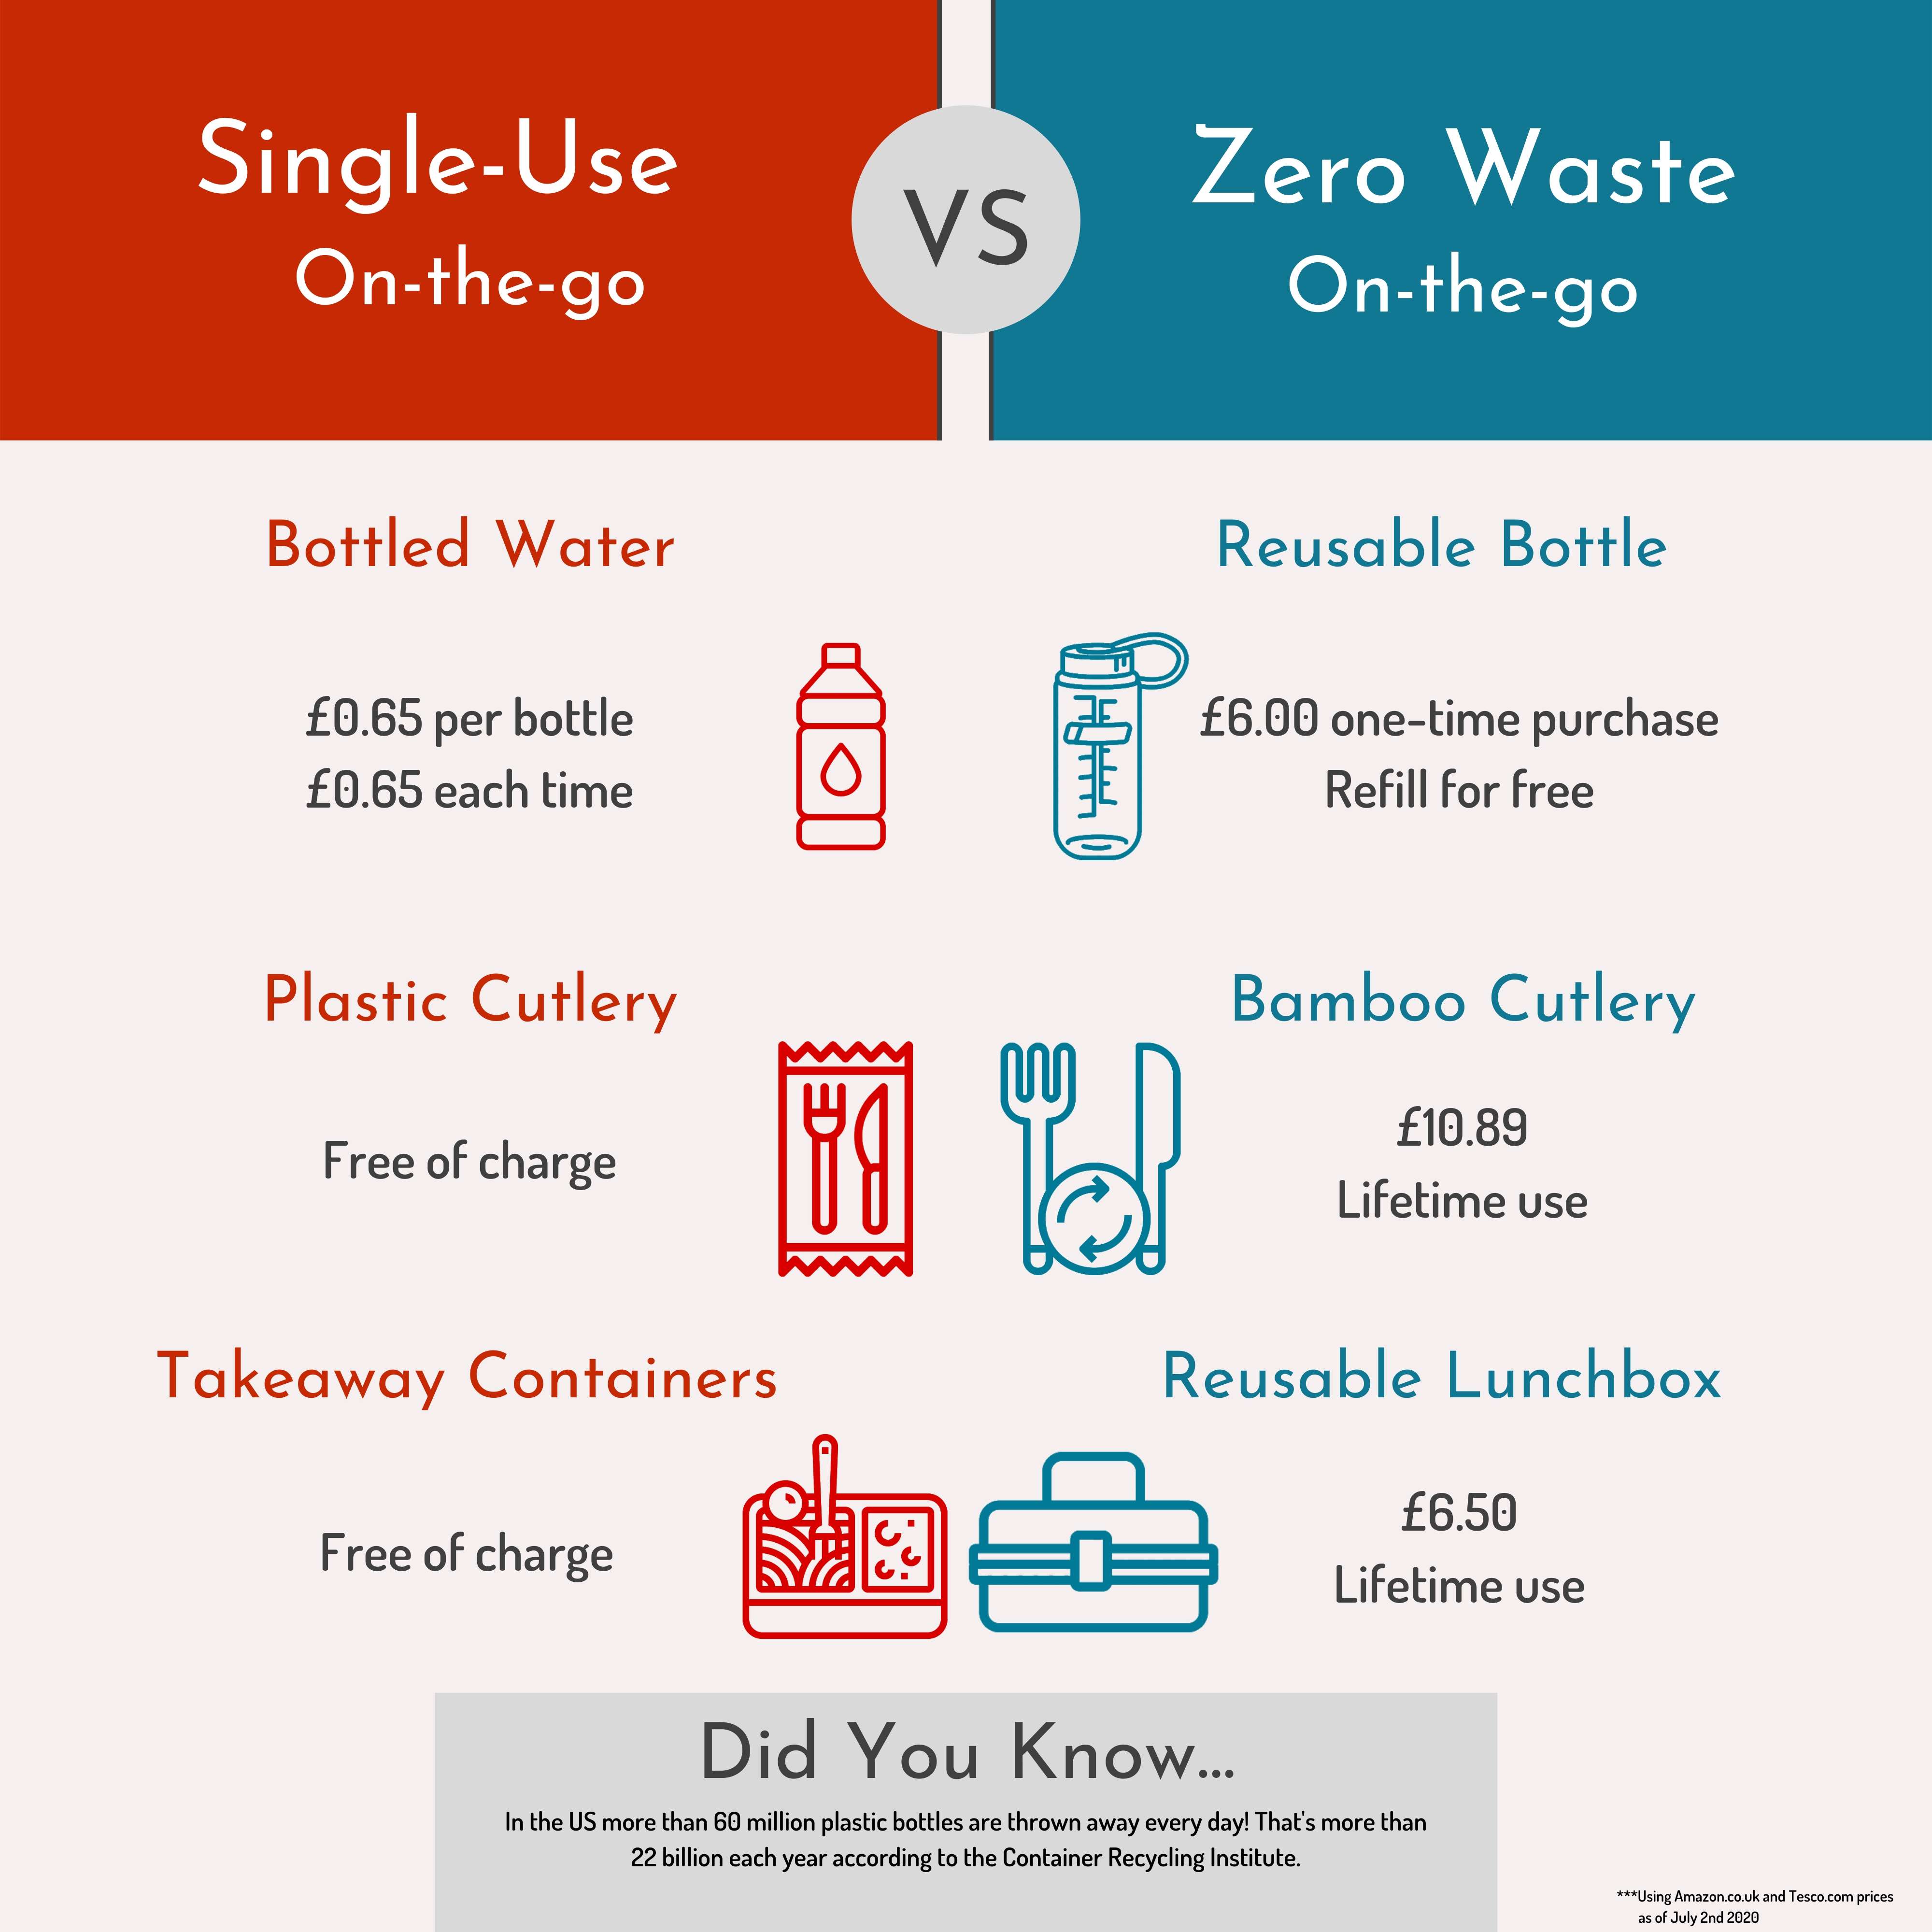 can zero waste be cheaper